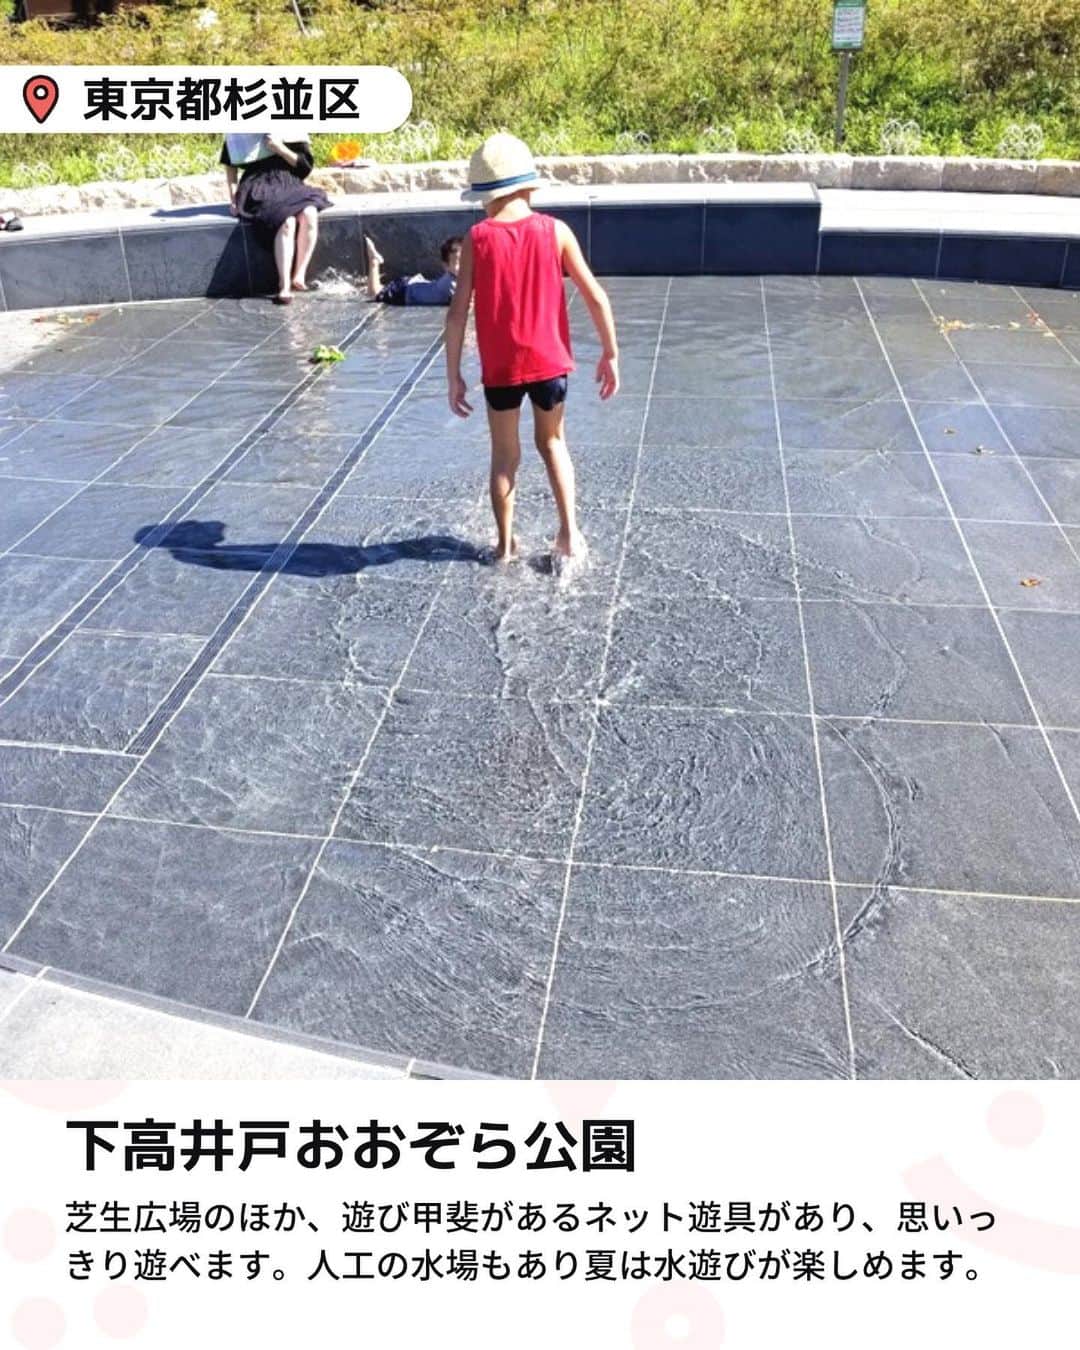 iko-yo（いこーよオフィシャル）さんのインスタグラム写真 - (iko-yo（いこーよオフィシャル）Instagram)「今回「浅めで小さい子供も楽しい！　おすすめ無料水遊びスポット5選」をピックアップ！ @ikoyo_odekake に他の投稿も！ ーーーーーーーーーーーーーーーーーー 📍 東京都北区 【音無親水公園】 園の真上には3つの優美な曲線を描くアーチ型の音無橋が架かっており、春には桜が、秋には紅葉が楽しめます。 遊具はありませんが、人工のせせらぎがあり、水遊びができます。水車や橋、岩までも配された100mほどせせらぎは、周りを囲む木々の緑と相まって渓流のような趣きで、小さいながら滝もあります。水深は子供のひざくらいですが、水遊びを満喫するならやっぱり水着がベター。  📍東京都杉並区 【下高井戸おおぞら公園】 「下高井戸おおぞら公園」は、京王線「桜上水駅」から徒歩約8分の場所にある公園です。 公園内には、広々とした芝生広場のほか、一風変わった遊び甲斐があるネット遊具があり、体を使って思いっきり遊べます。その遊具エリアの横に人工の水場があり、夏は水遊びが楽しめます。水深が浅く小さな子供も安心して楽しめますよ。  📍東京都足立区 【舎人公園】 この公園には、水遊びできる場所が2カ所あります。１つは、駅を降りてすぐの入口付近から、大小の噴水をつなぐ浅い水路。 もう1つは、大きな池の先にある、「浮球の池」と呼ばれる大きなじゃぶじゃぶ池です。丘から滑り降りるウォータースライダーが子供に大人気で、夏休み期間中に開放されます。  📍東京都墨田区 【大横川親水公園】 ゾーンによって、釣り堀や噴水、ローラー滑り台などの遊具、橋や鉄橋をくぐるトンネルがあったり、異なる見どころがあるのが魅力。子供連れで楽しめる散歩道です。 とくに、平川橋〜横川橋間が、じゃぶじゃぶ池として整備されていて、水遊びしやすくなっています。 桜や木瓜・白木蓮に菖蒲など、四季の花々が咲き、東京スカイツリーも見えますよ。  📍東京都杉並区 【井草森公園】 園内は、広場で走ったり遊具で遊べる「原っぱゾーン」、築山と池が楽しい「森と水のゾーン」、サッカーなどが人気の「多目的運動場ゾーン」に分かれています。 夏場に水遊びができるのは「森と水のゾーン」。滝から落水して渓流のようにせせらぎが流れていき、下流の浅い水溜まりで水遊びができます。  ※2023年7月9日時点の情報です。 最新の情報は公式HPや「いこーよ」サイトでご確認ください。 ーーーーーーーーーーーーーーーーーーー おでかけ情報量は日本最大級！ 子どもとお出かけ情報サイト「いこーよ」 「親子でおでかけしたい場所」をご紹介させていただいています！  お子さんとのおでかけの思い出の写真を、このアカウントをフォローの上#いこーよ #いこーよおでかけ部 をつけてぜひ投稿してください。魅力的な写真は、いこーよ公式SNSで紹介させていただきます！  募集中タグ#いこーよ #いこーよおでかけ部  「子どもと行きたい！」と思ったら保存が便利！ プロフィールのURLから「いこーよ」のサイトに行くと、他の投稿やオトクな情報などが載っています♪ ☞ @ikoyo_odekake  #いこーよ #お出かけ #おでかけ #お出かけスポット #子連れ #子連れ旅行#こどものいる暮らし #子連れスポット  #子どもとおでかけ #杉並ママ #杉並旅行 #杉並観光 #足立観光 #足立旅行 #足立ママ #井草森公園 #大横川親水公園 #音無親水公園 #舎人公園 #下高井戸おおぞら公園 #無料水遊び #じゃぶじゃぶ池 #夏休み」7月18日 19時08分 - ikoyo_odekake